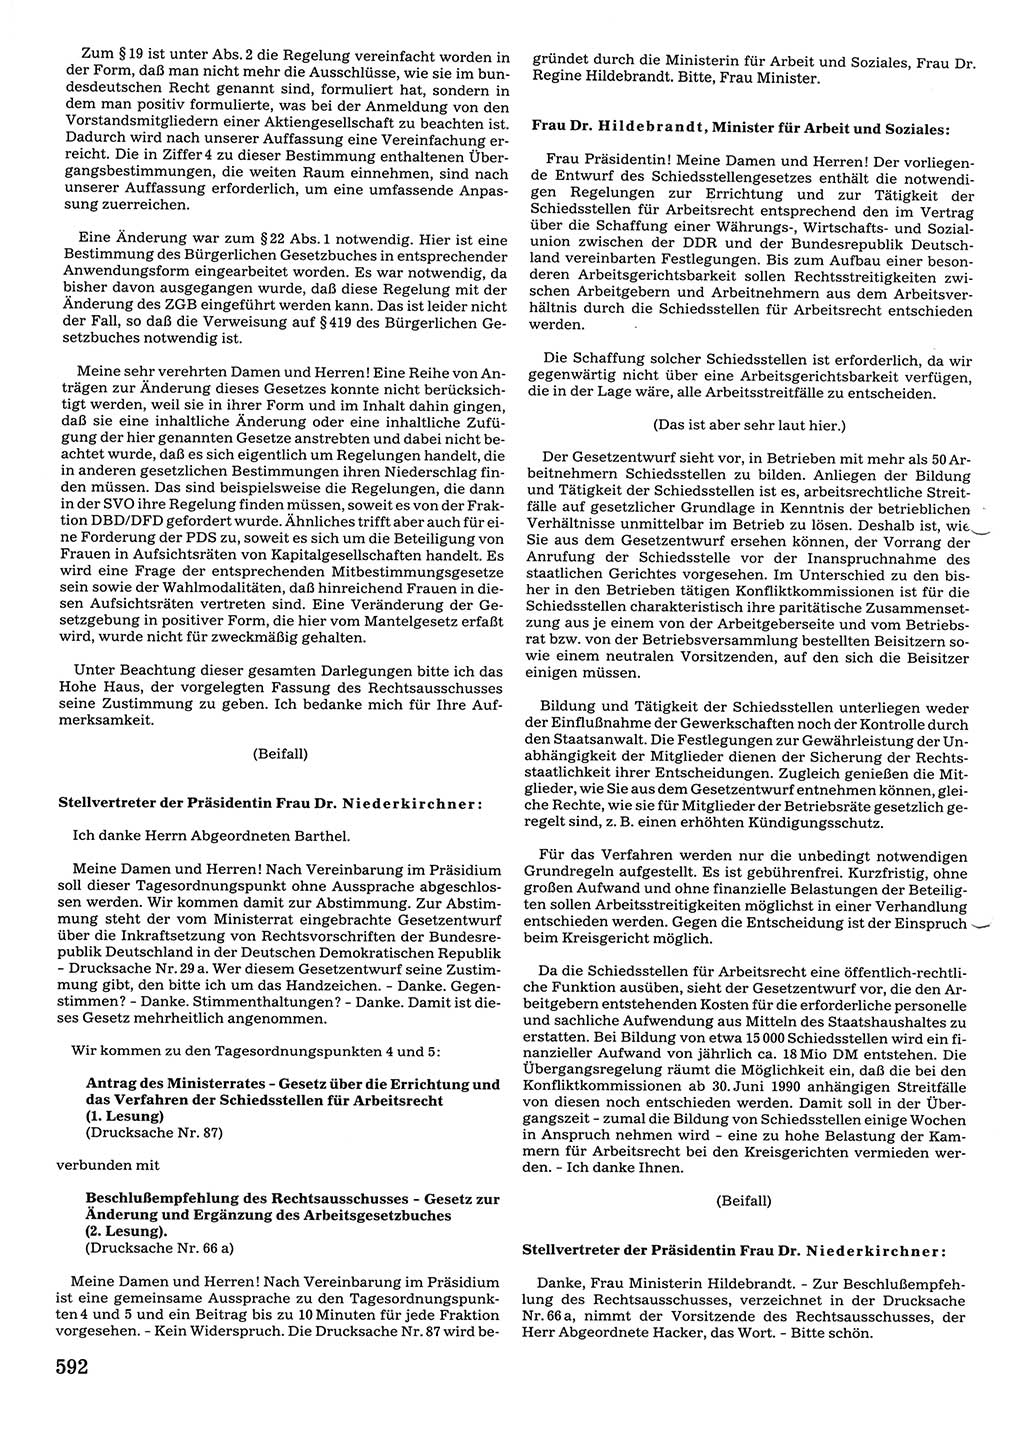 Tagungen der Volkskammer (VK) der Deutschen Demokratischen Republik (DDR), 10. Wahlperiode 1990, Seite 592 (VK. DDR 10. WP. 1990, Prot. Tg. 1-38, 5.4.-2.10.1990, S. 592)